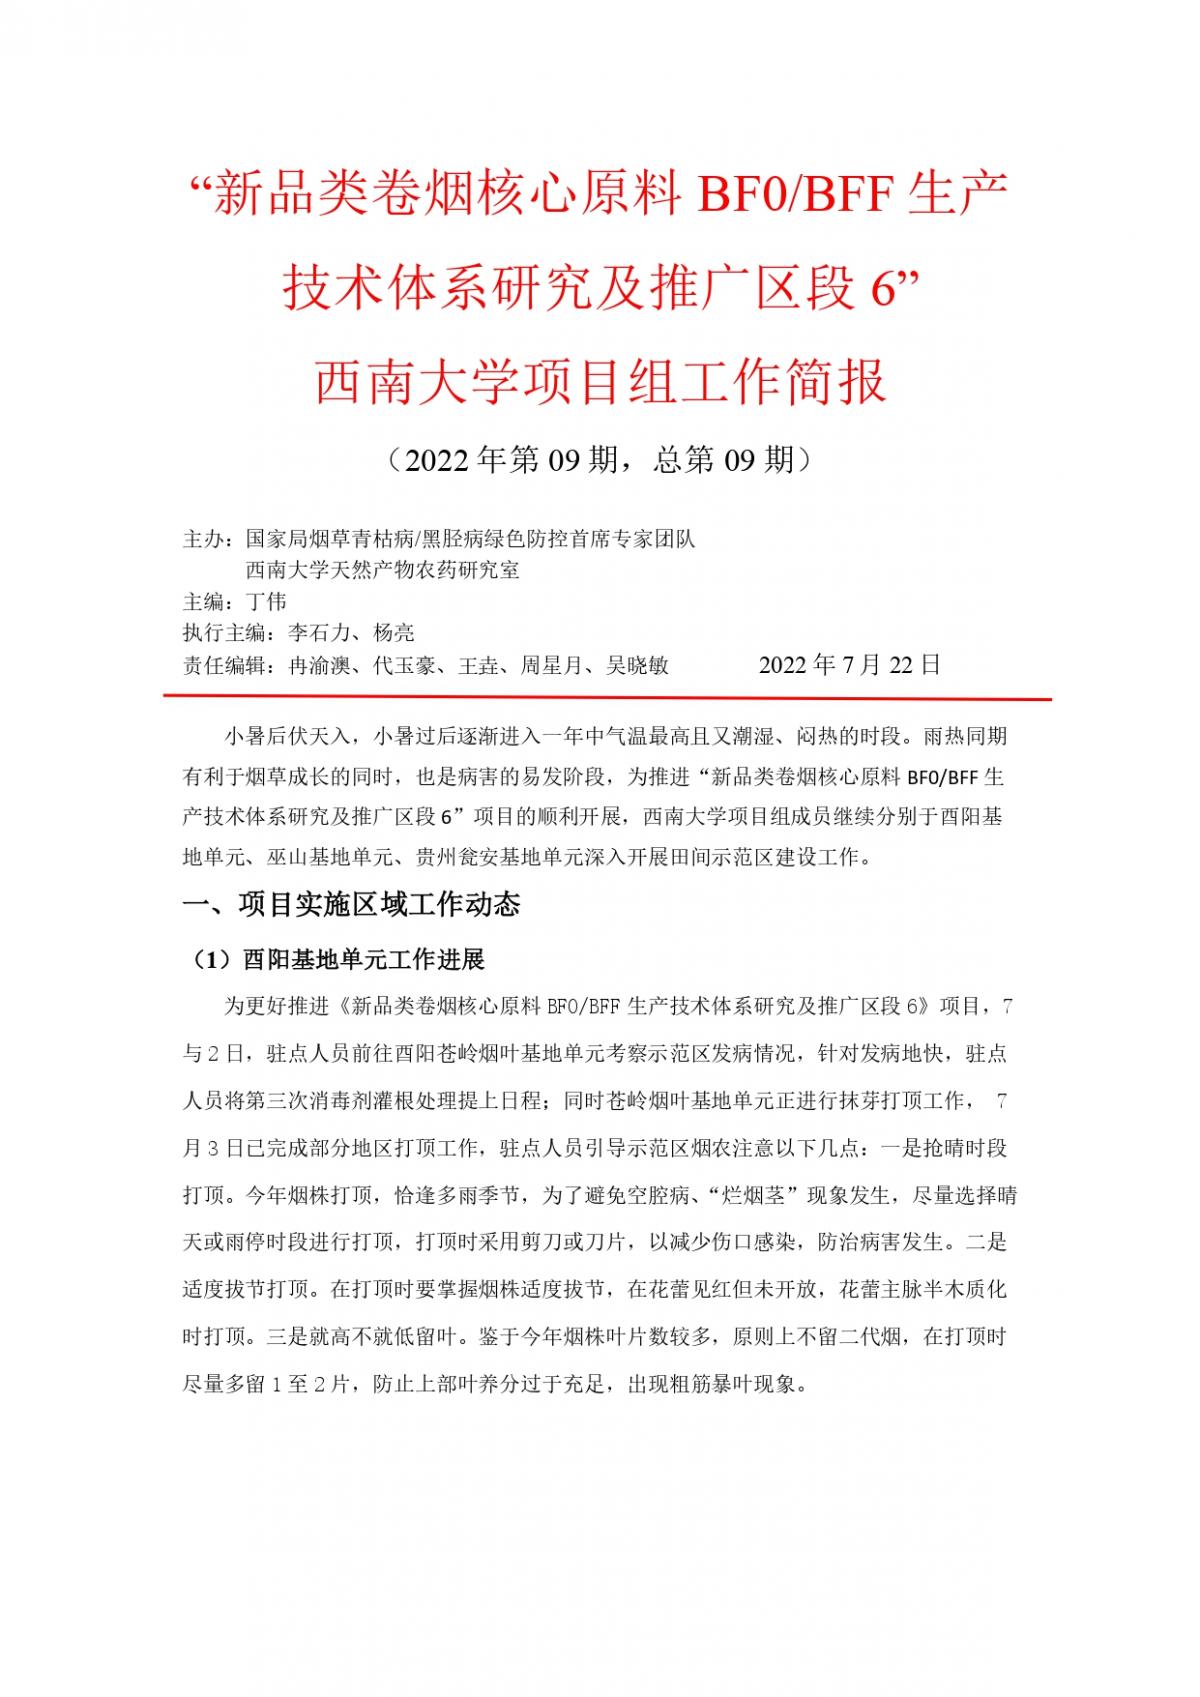 2022年湖南中烟工作报告 第9期  _page-0001.jpg